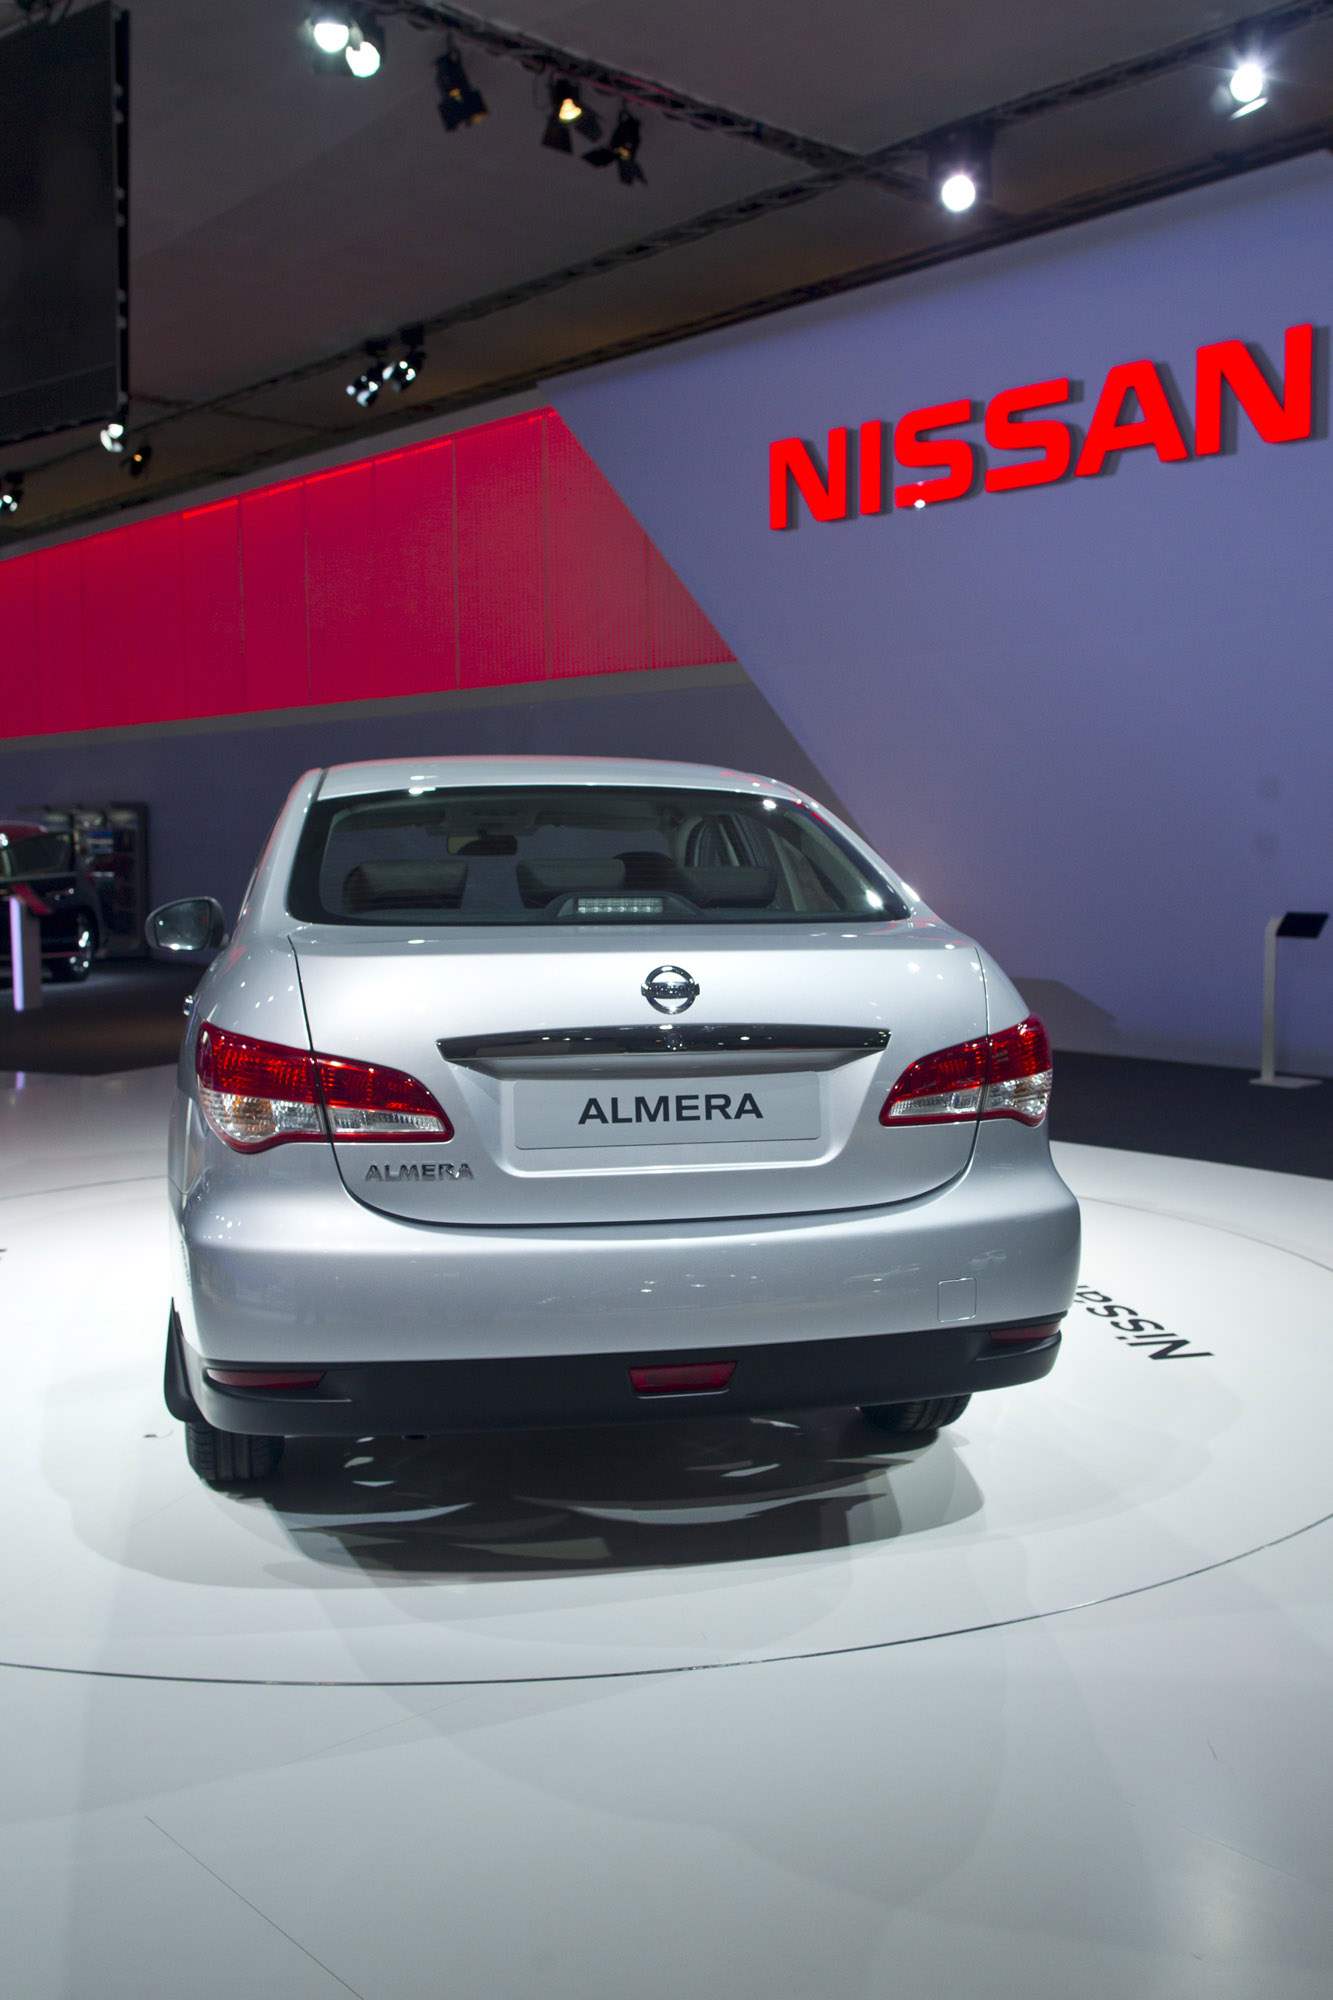 2013 Nissan Almera for Russia 